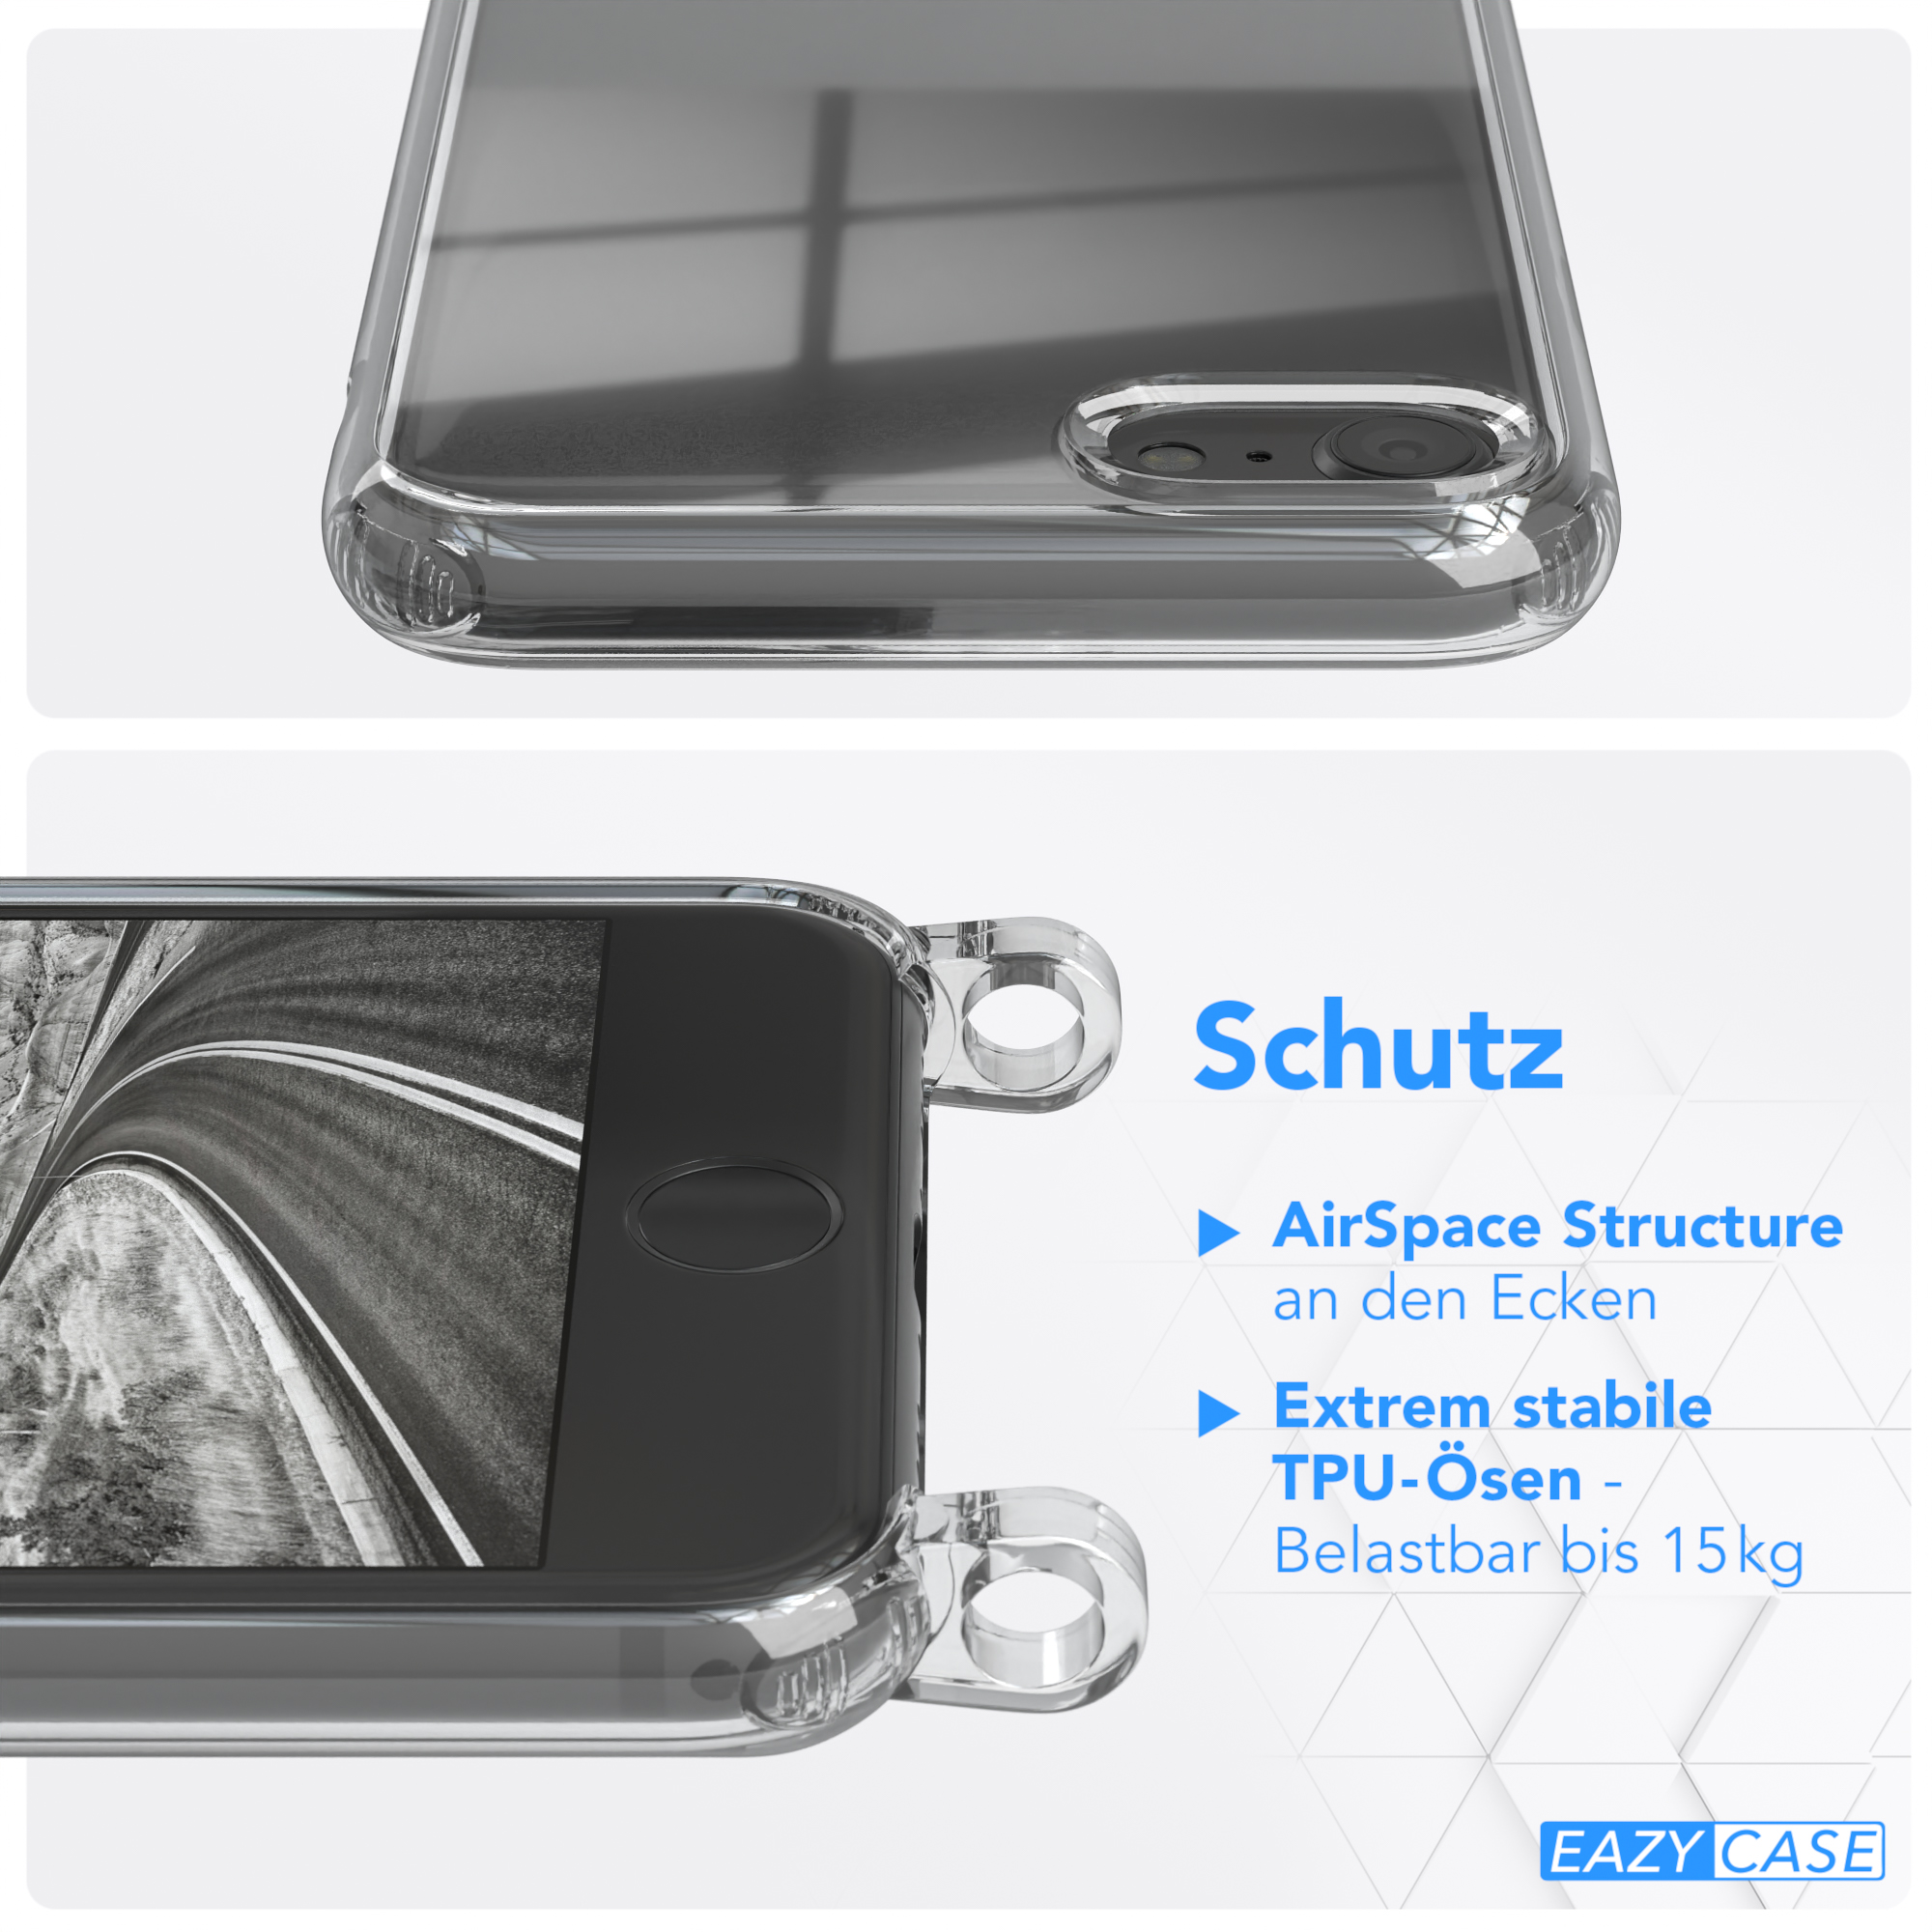 EAZY CASE Transparente Handyhülle Apple, iPhone Silber / + 2020, 7 SE runder Umhängetasche, SE iPhone 8, / mit Kordel 2022 Schwarz / Karabiner